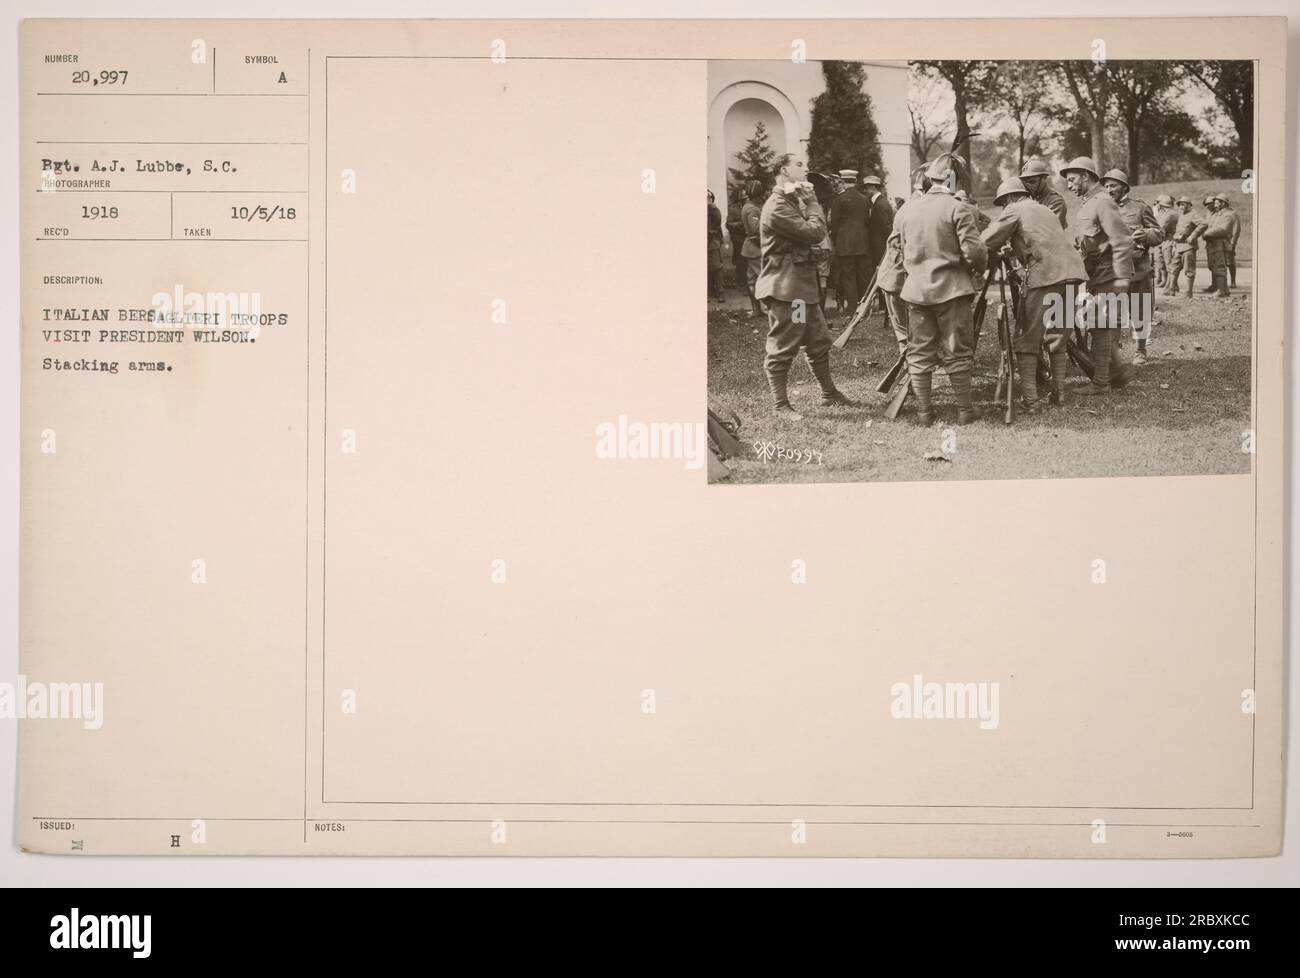 Italienische Bersaglieri-Truppen, die Präsident Wilson im Ersten Weltkrieg besuchen. Die Truppen, die hier gesehen werden, stapeln ihre Arme. 5. Oktober 1918. Stockfoto